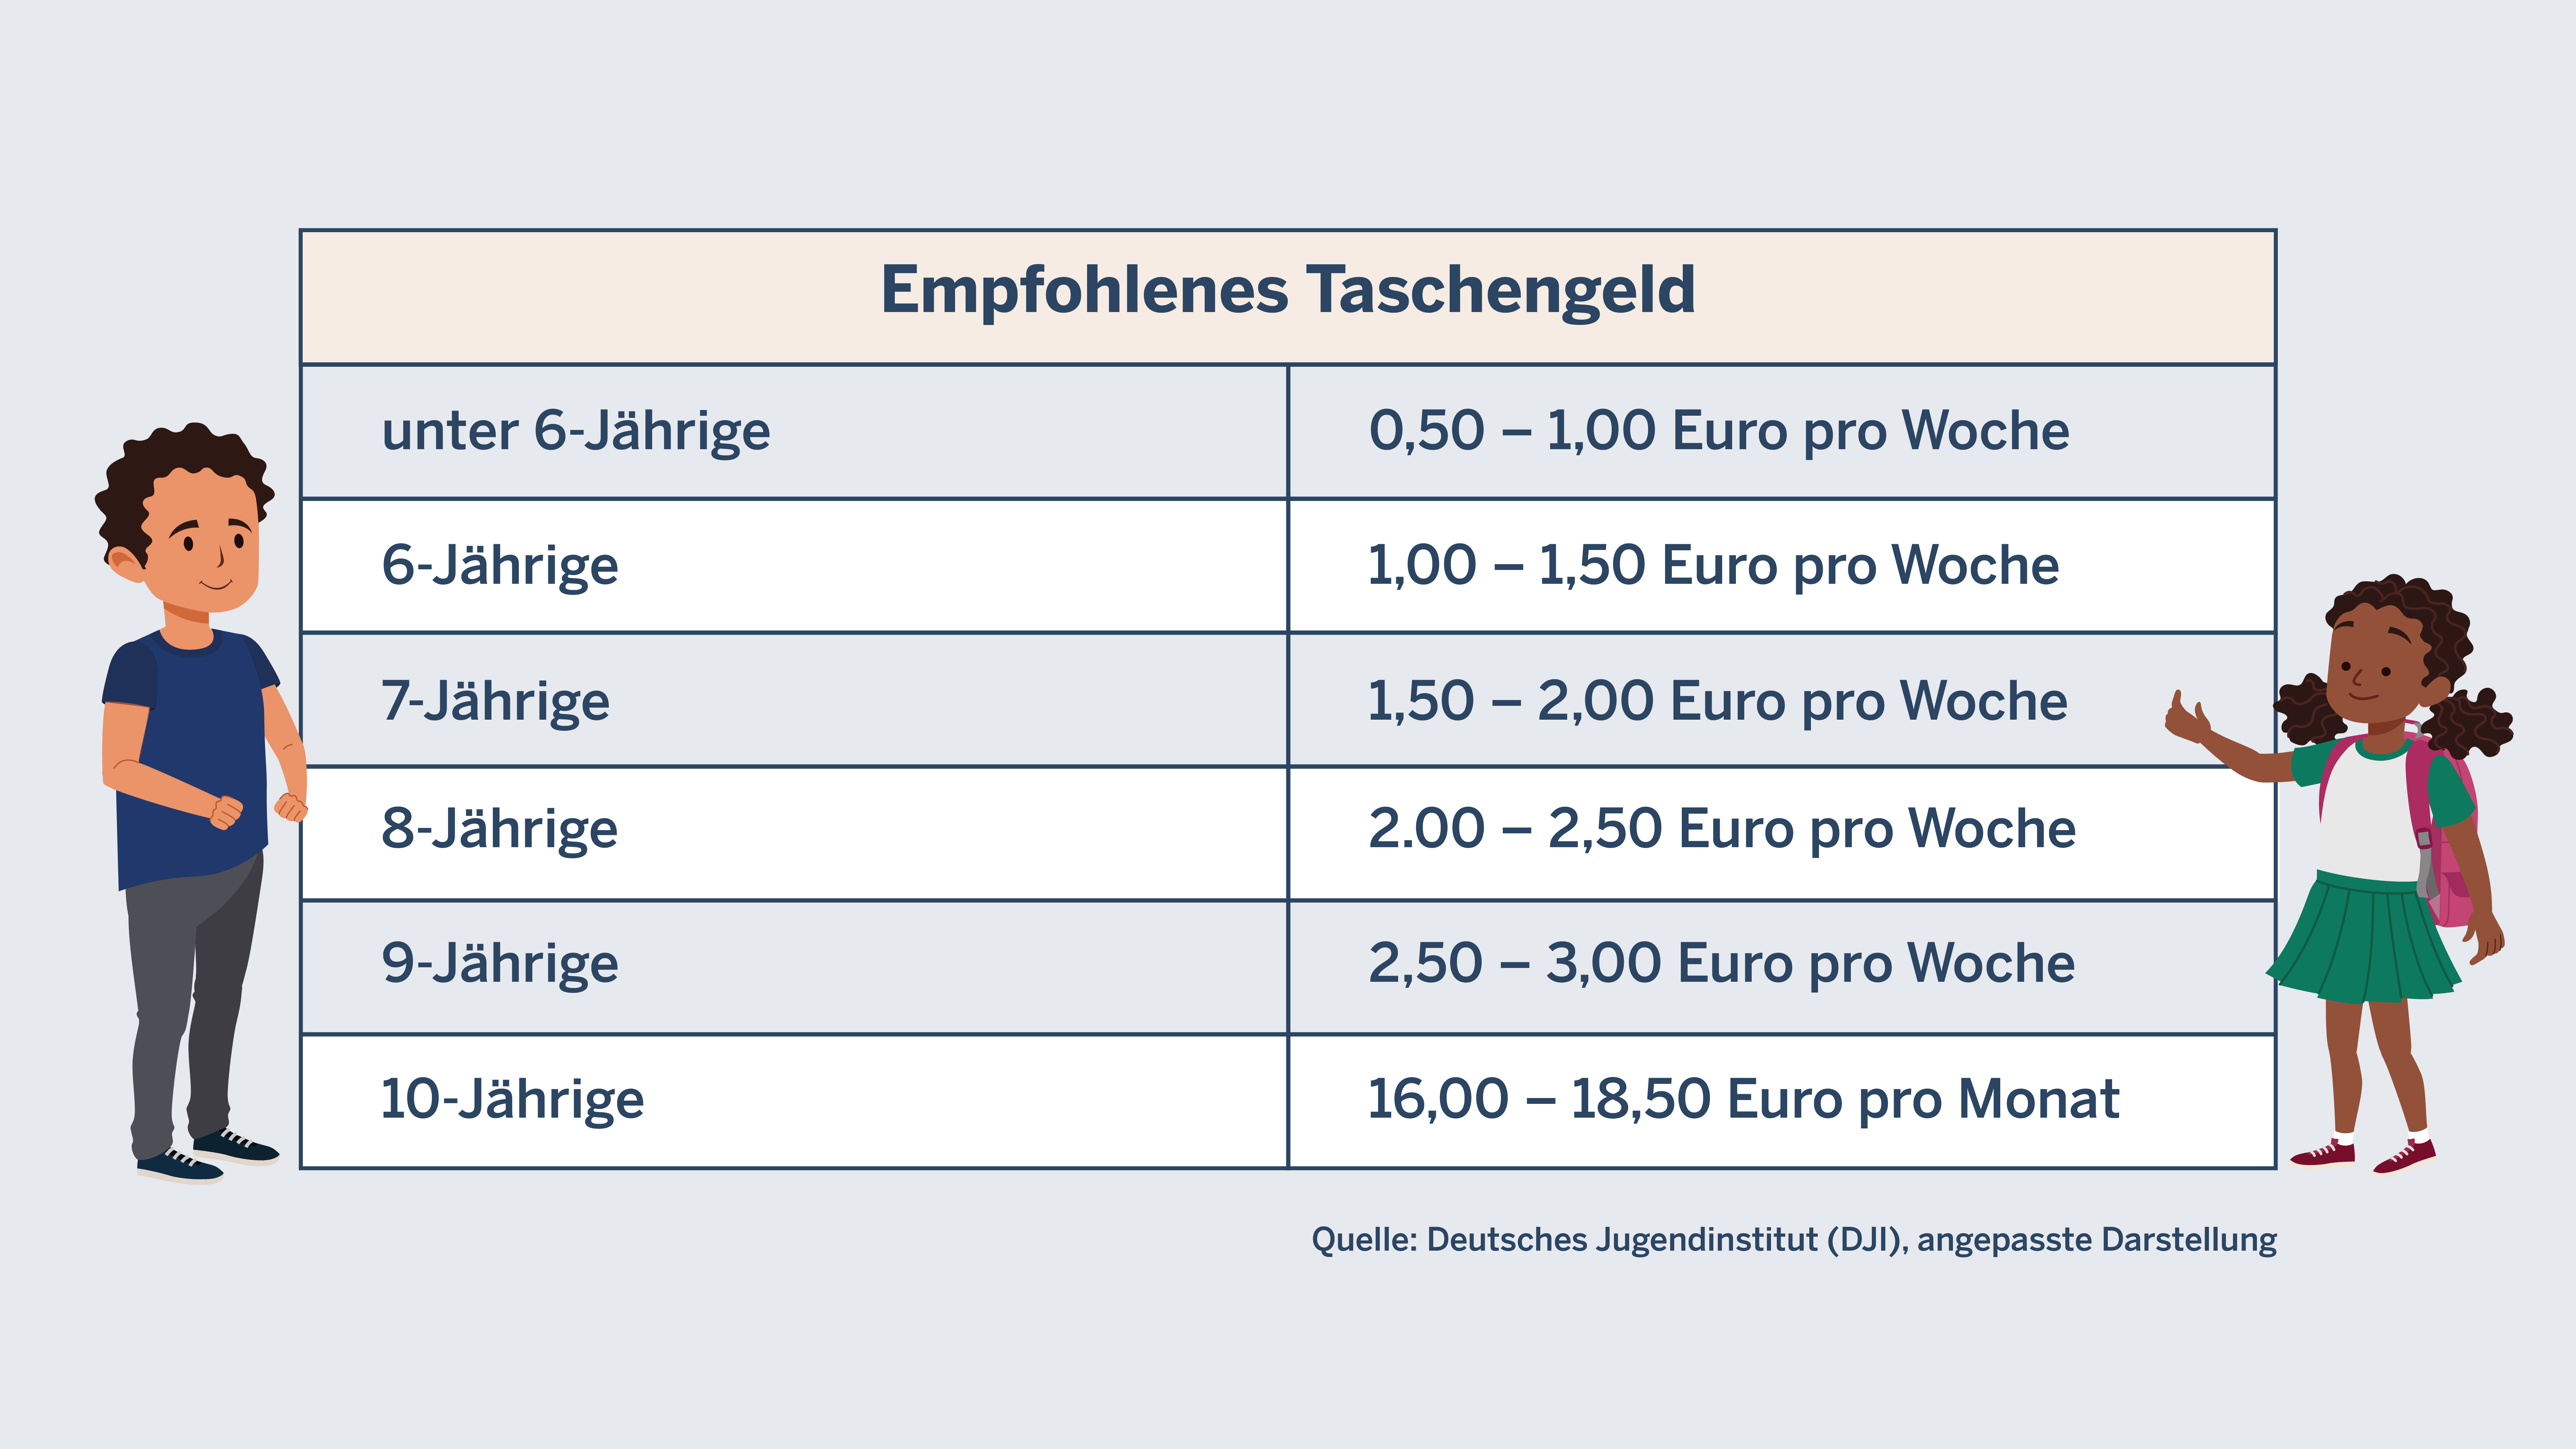 Empfohlenes Taschengeld unter 6-Jährige: 0,50 – 1,00 Euro pro Woche 6-Jährige. 1,00 – 1,50 Euro pro Woche 7-Jährige: 1,50 – 2,00 Euro pro Monat 8-Jährige: 2.00 – 2,50 Euro pro Woche 9-Jährige: 2,50 – 3,00 Euro pro Woche 10-Jährige: 16,00 – 18,50 Euro pro Monat  Quelle: Deutsches Jugendinstitut (DJI), angepasste Darstellung